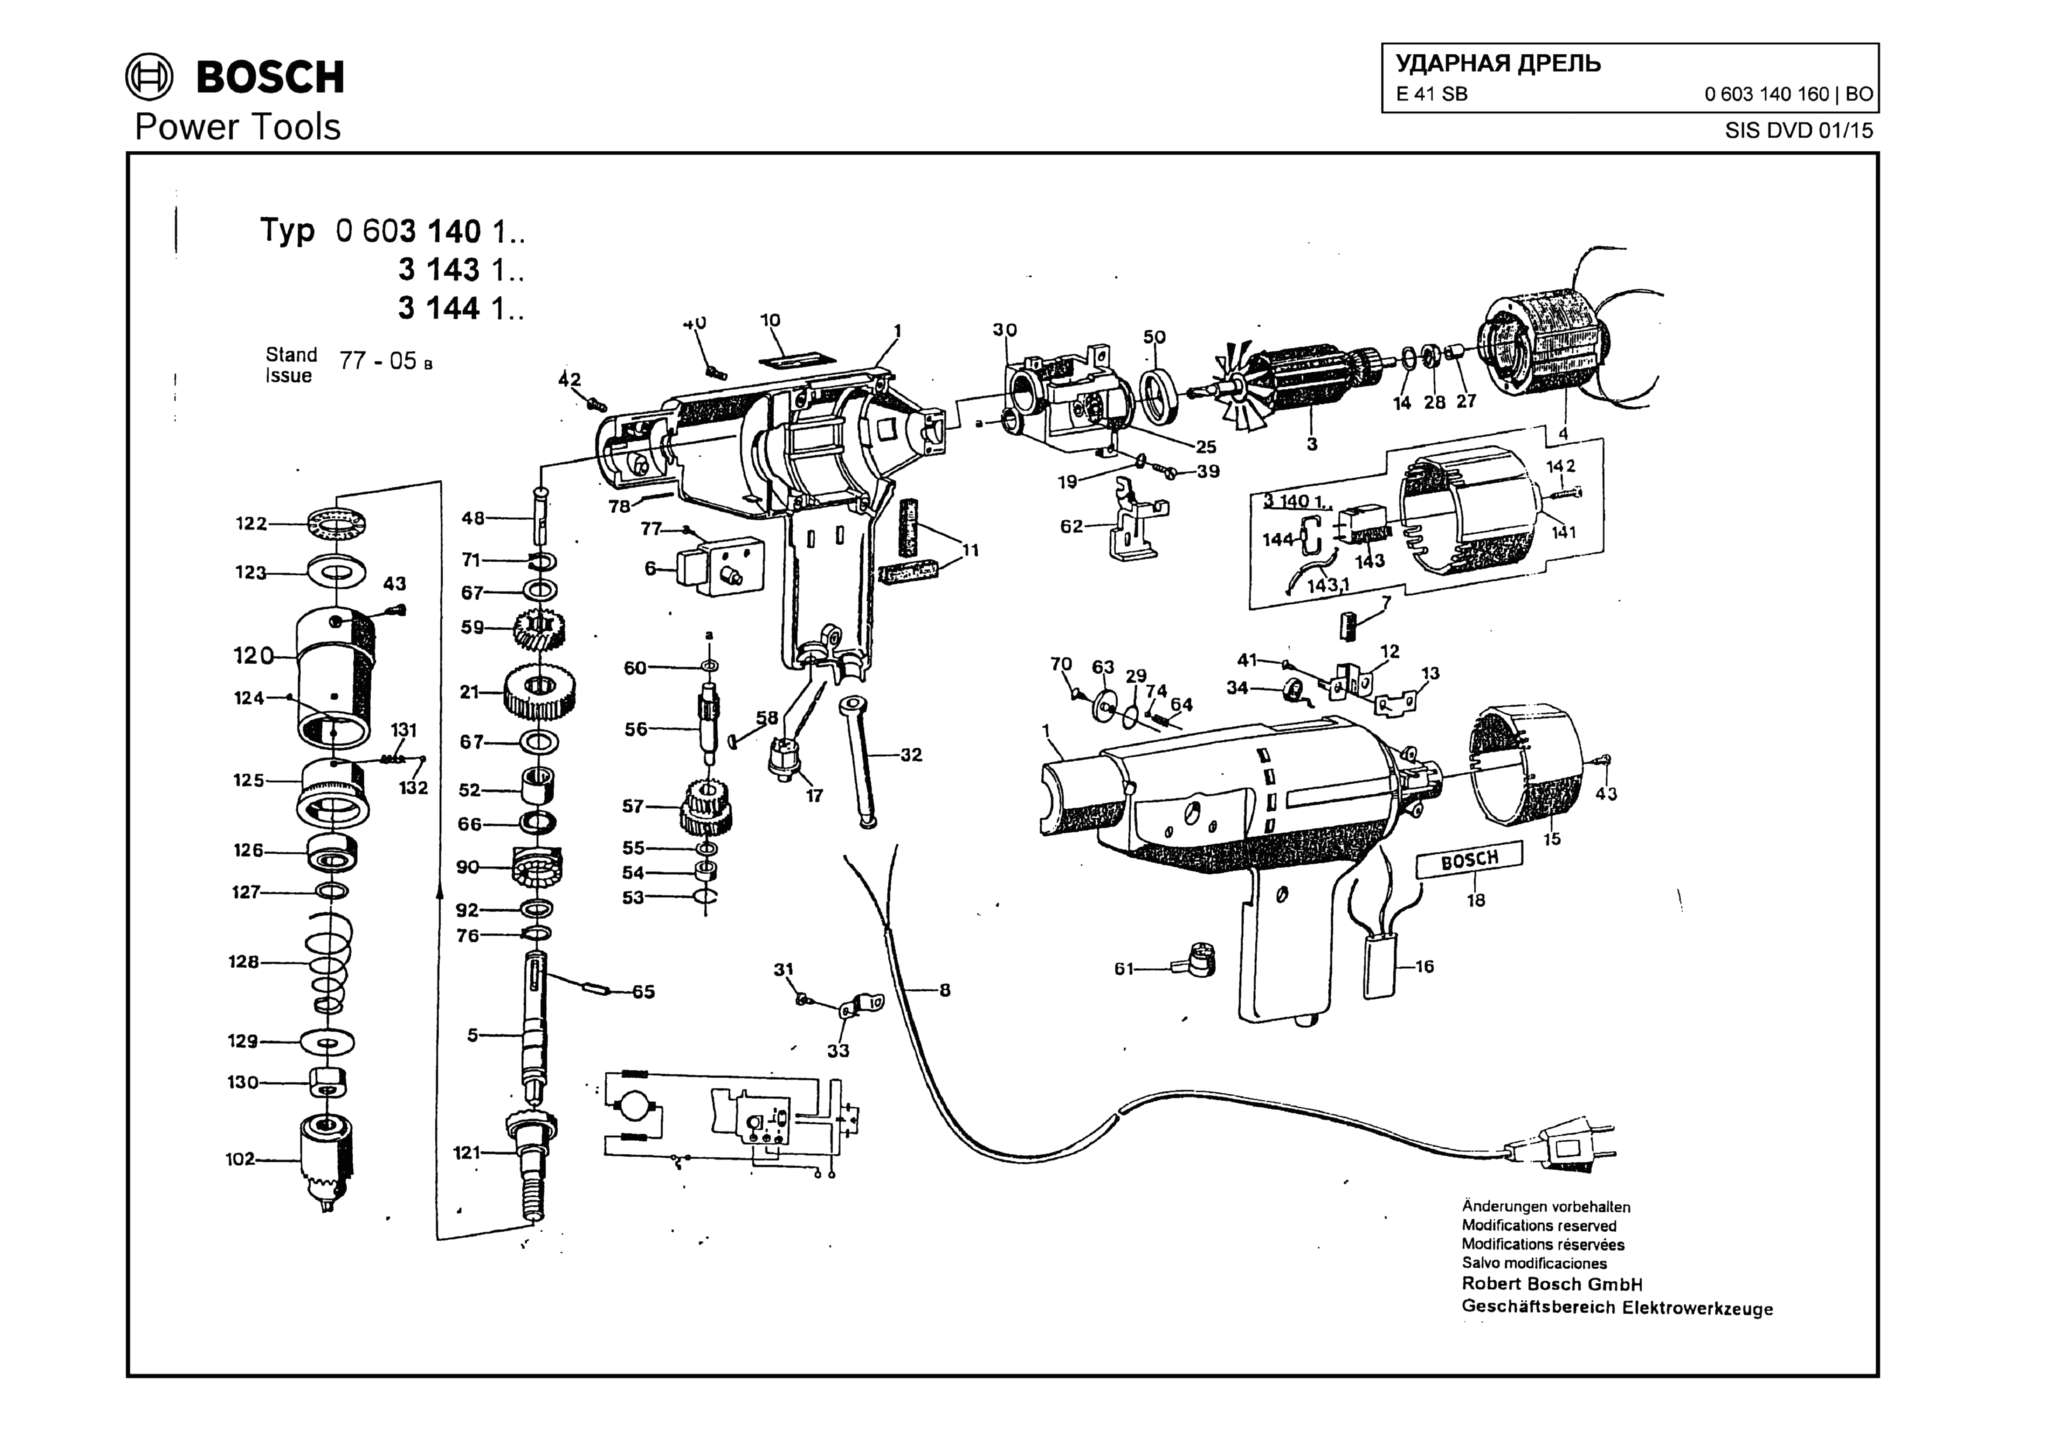 Запчасти, схема и деталировка Bosch E 41 SB (ТИП 0603140160)